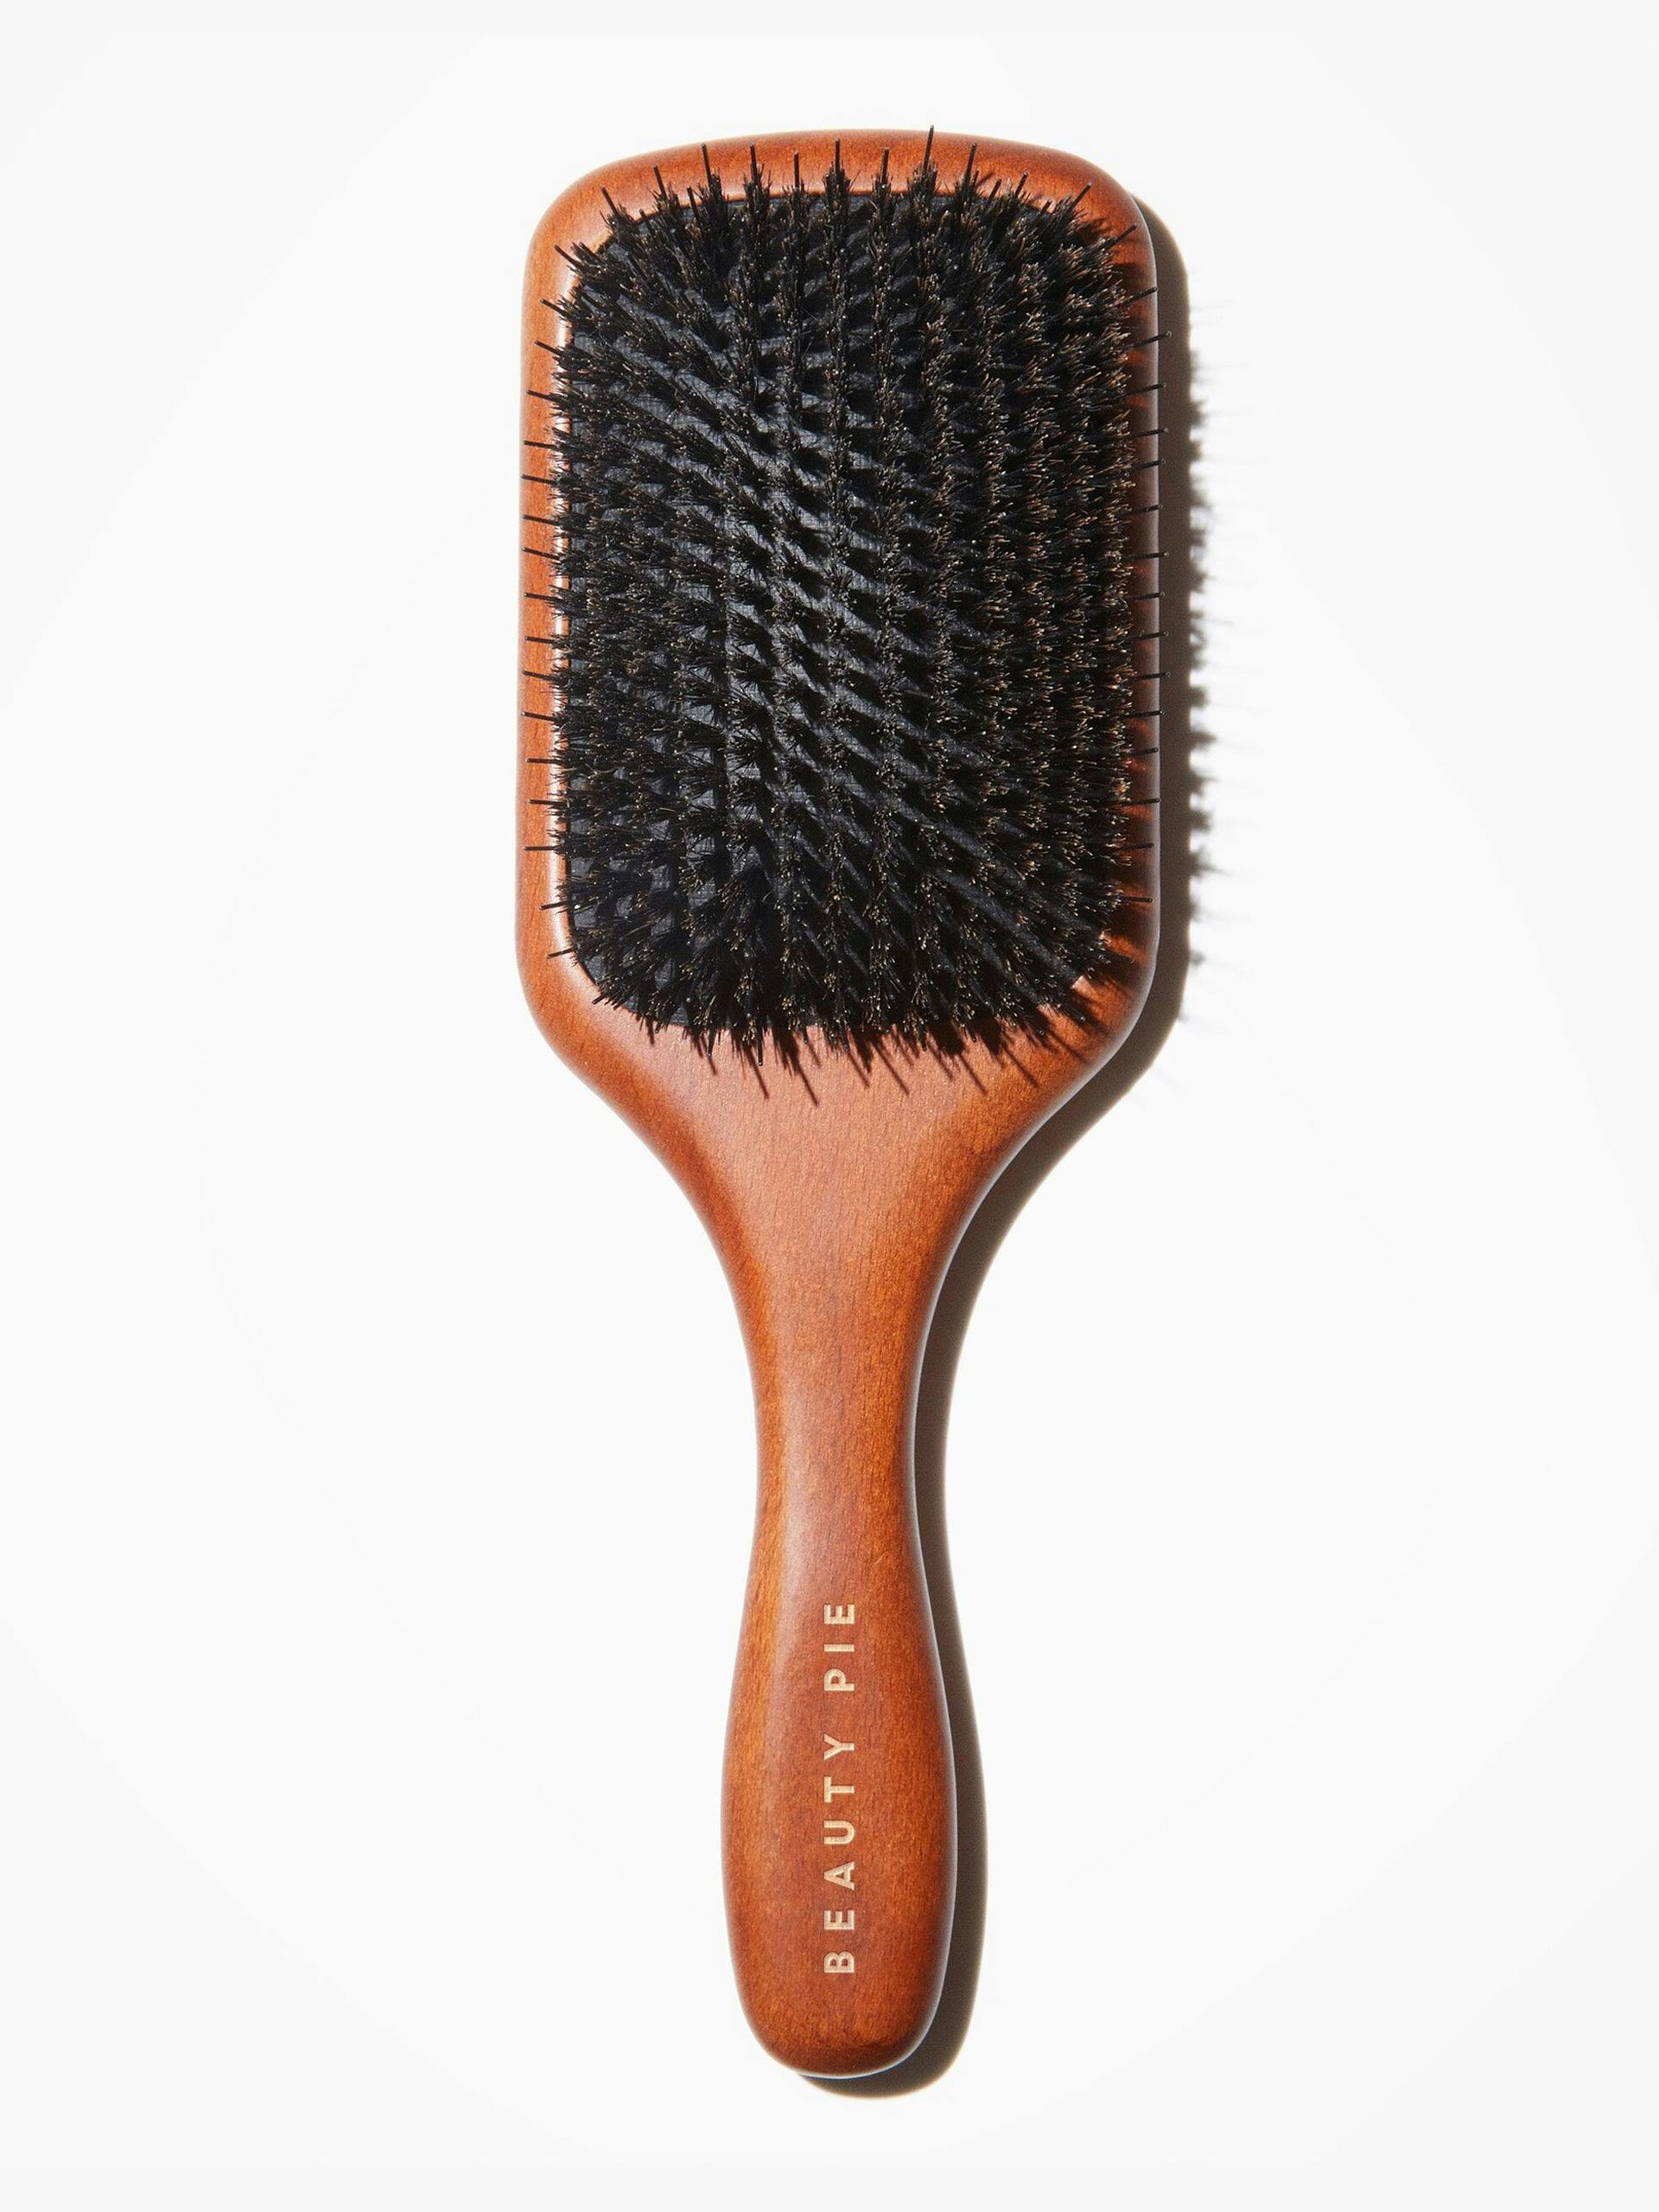 Paddle hairbrush